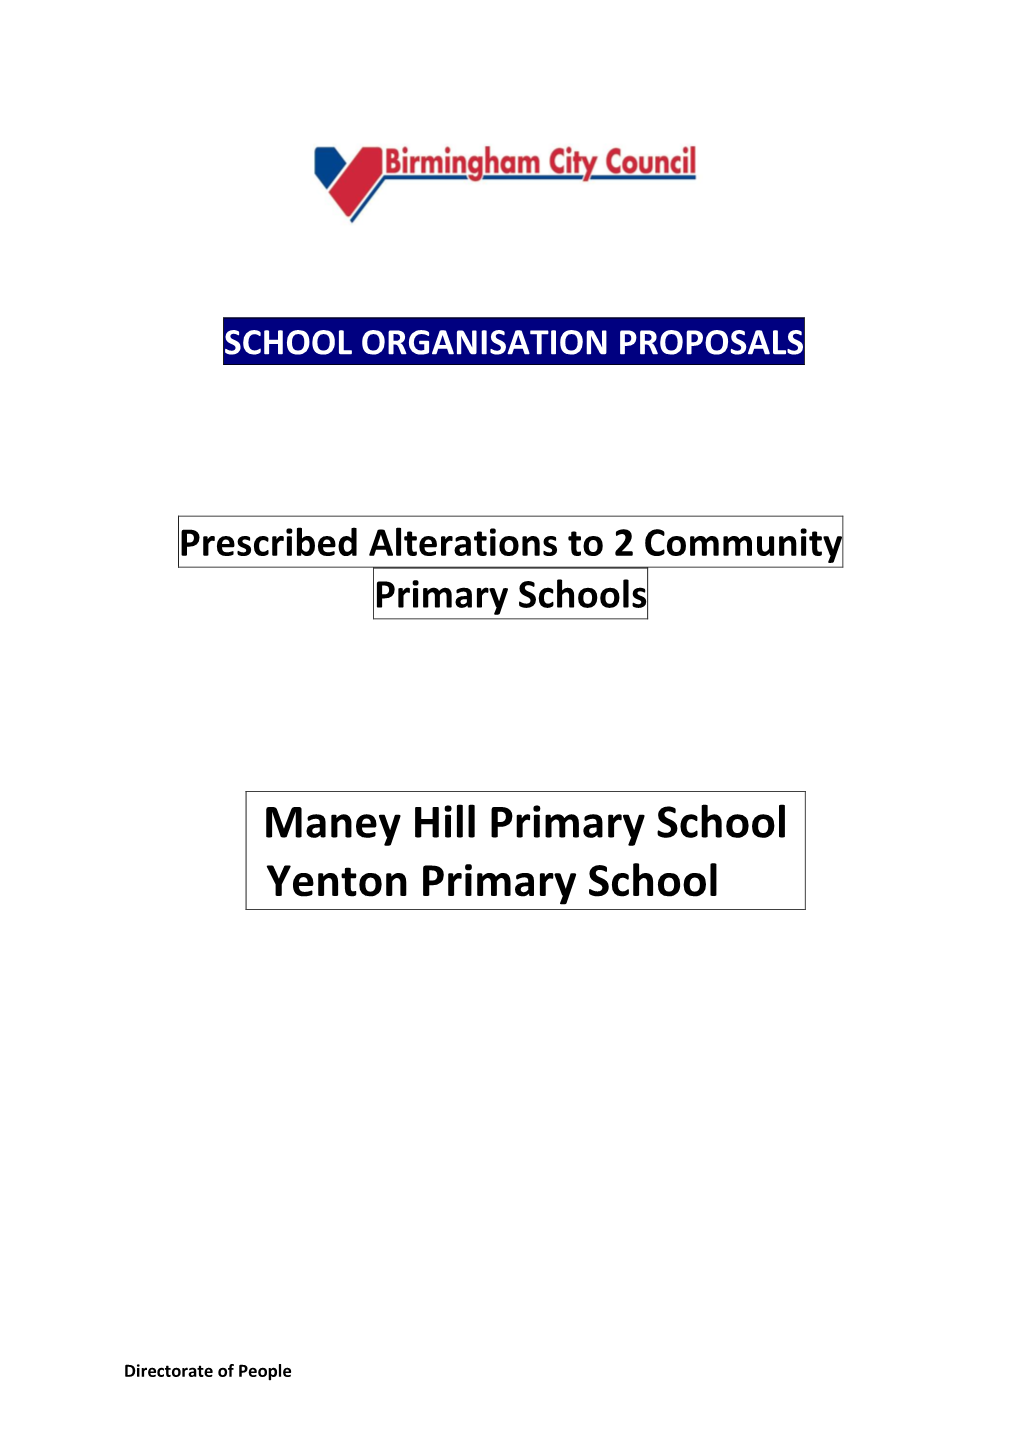 Maney Hill Primary School Yenton Primary School